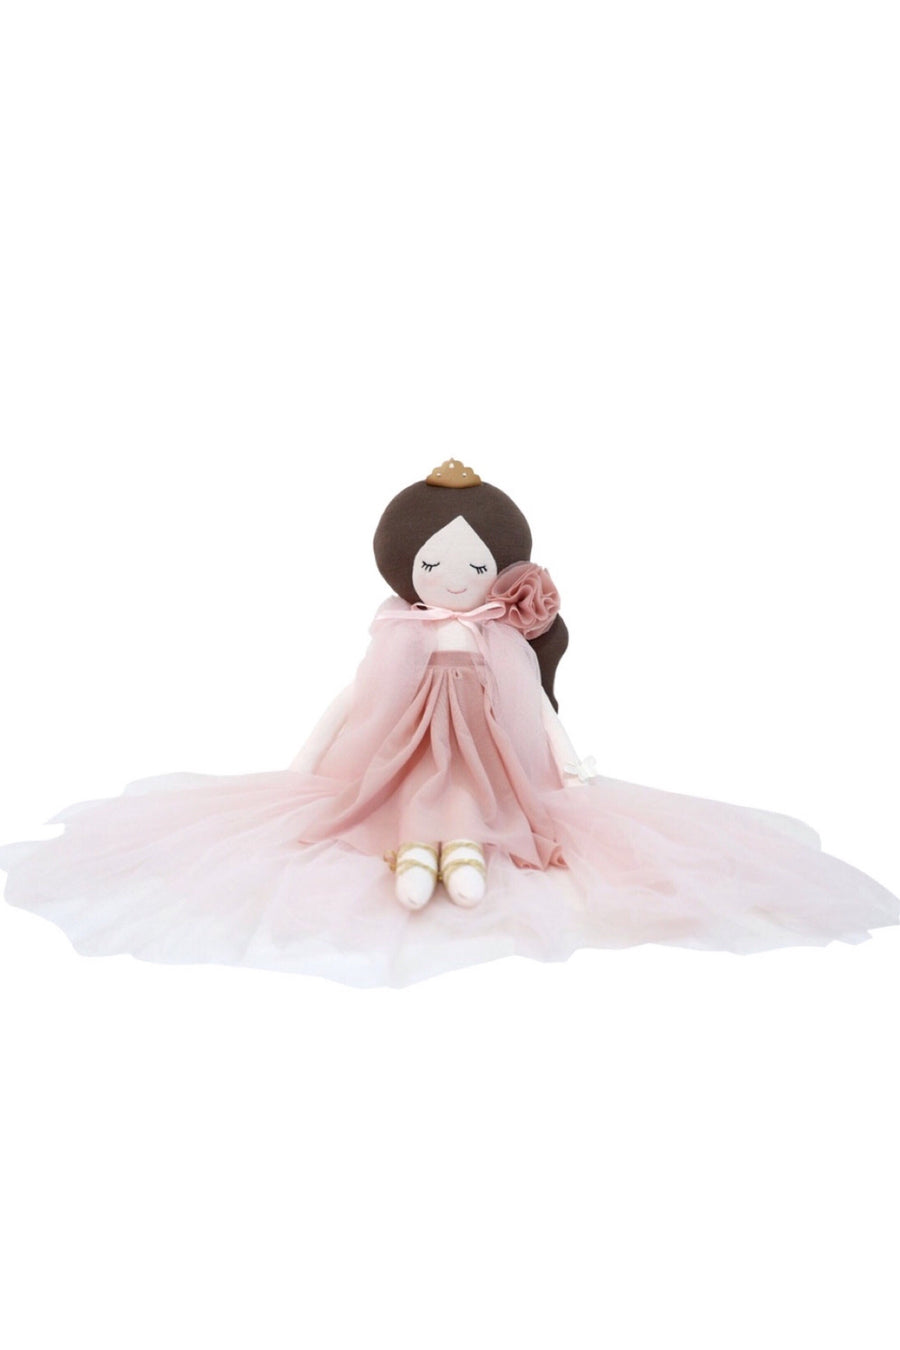 Dreamy Princess Quinn, Toy, Spinkie - 3LittlePicks